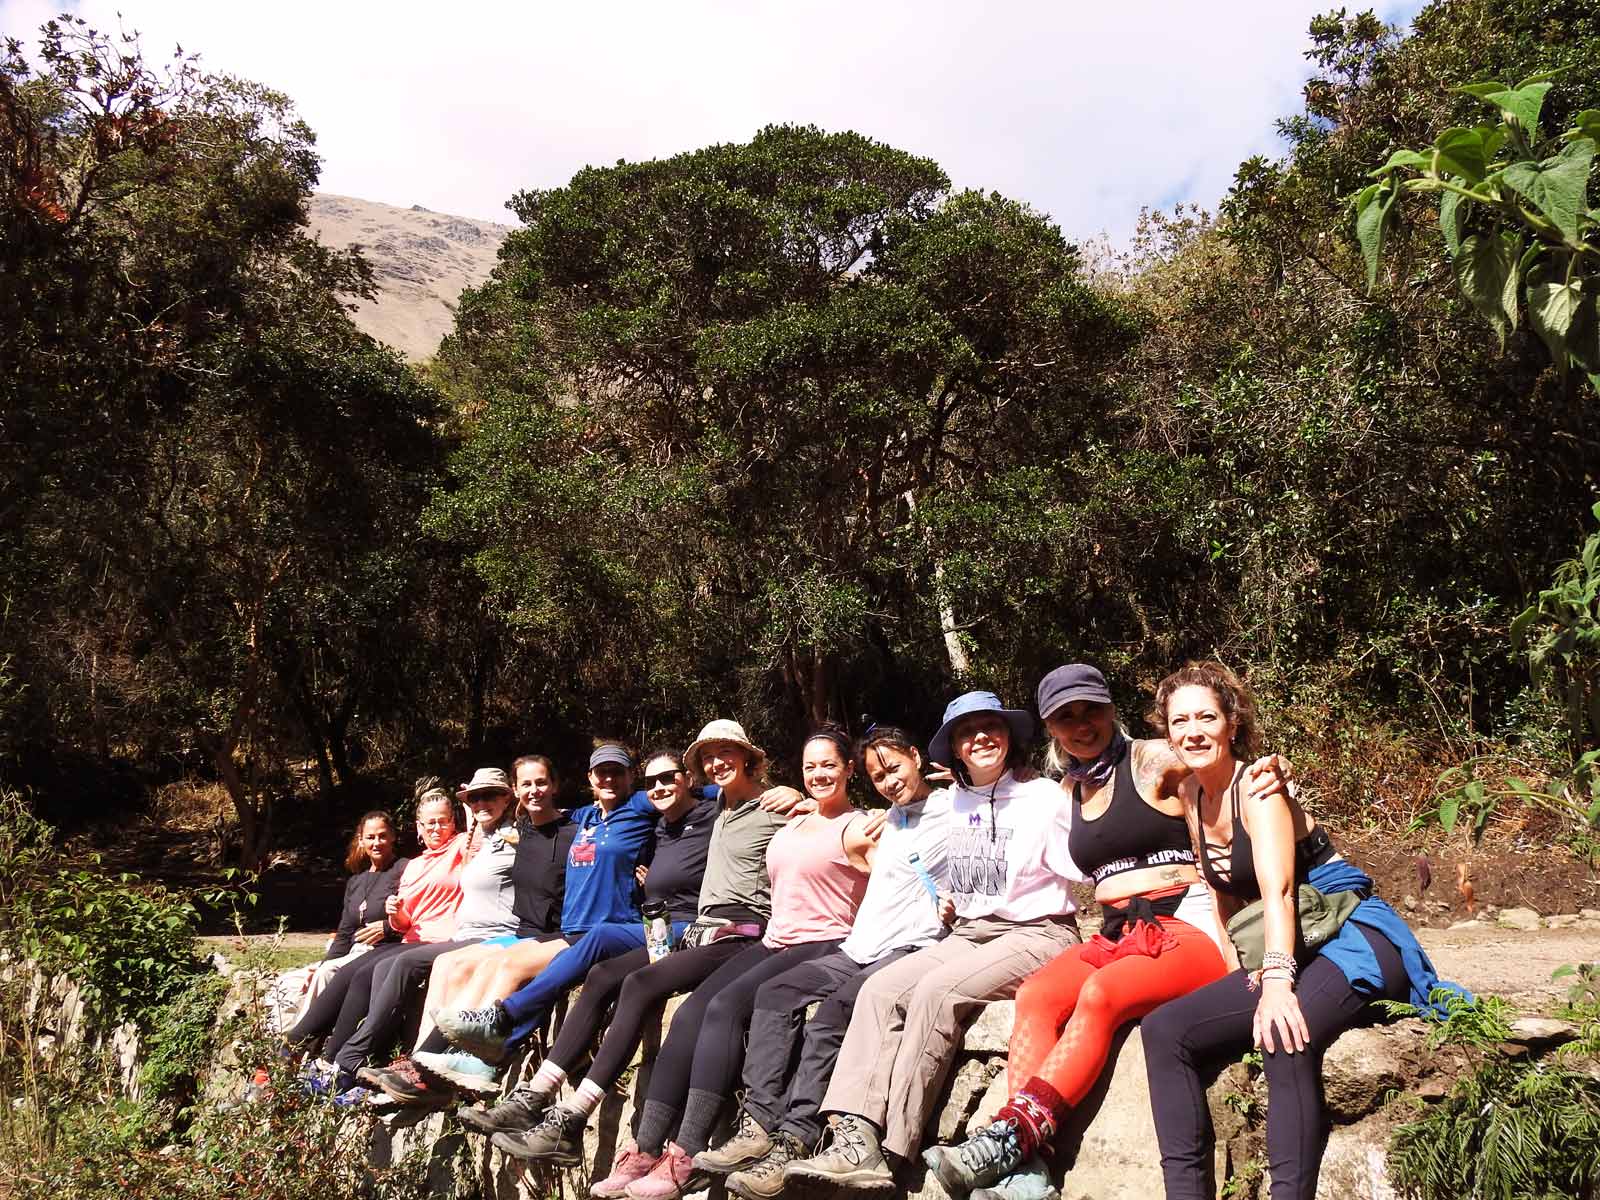 Day 1: Trekking Km 82 “Piscacucho to Wayllabamba”